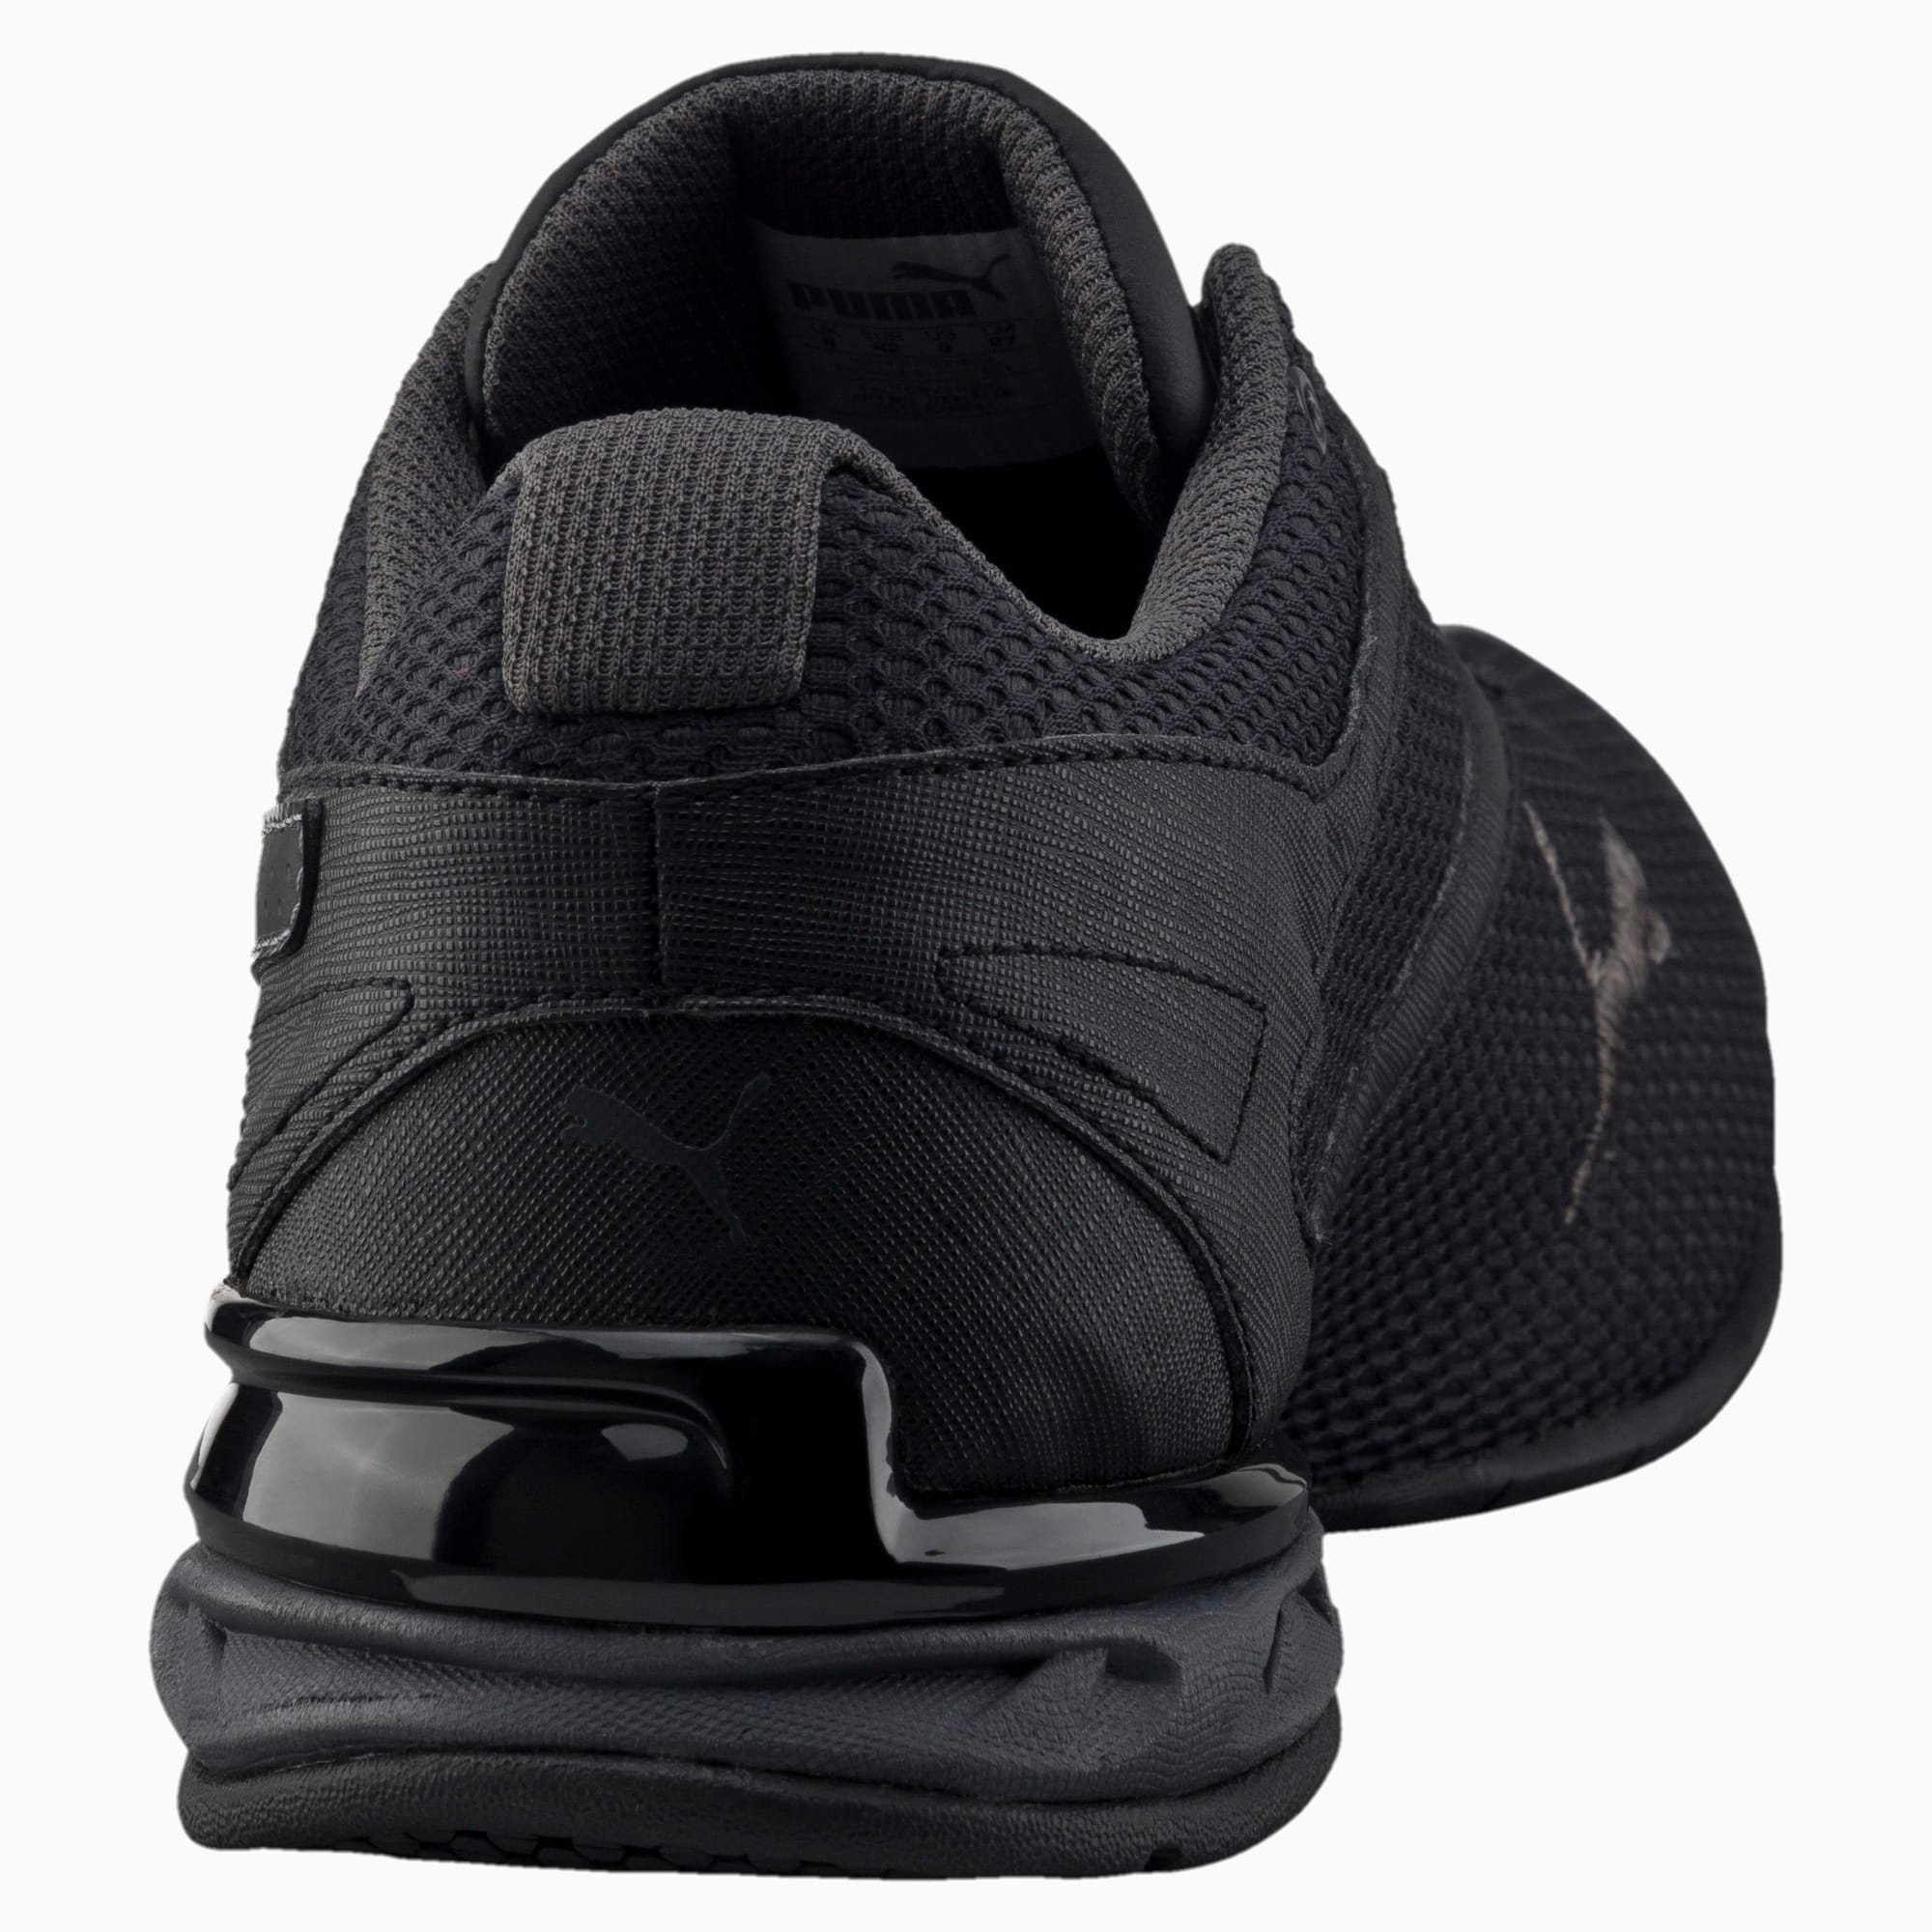 puma black mesh sports shoes